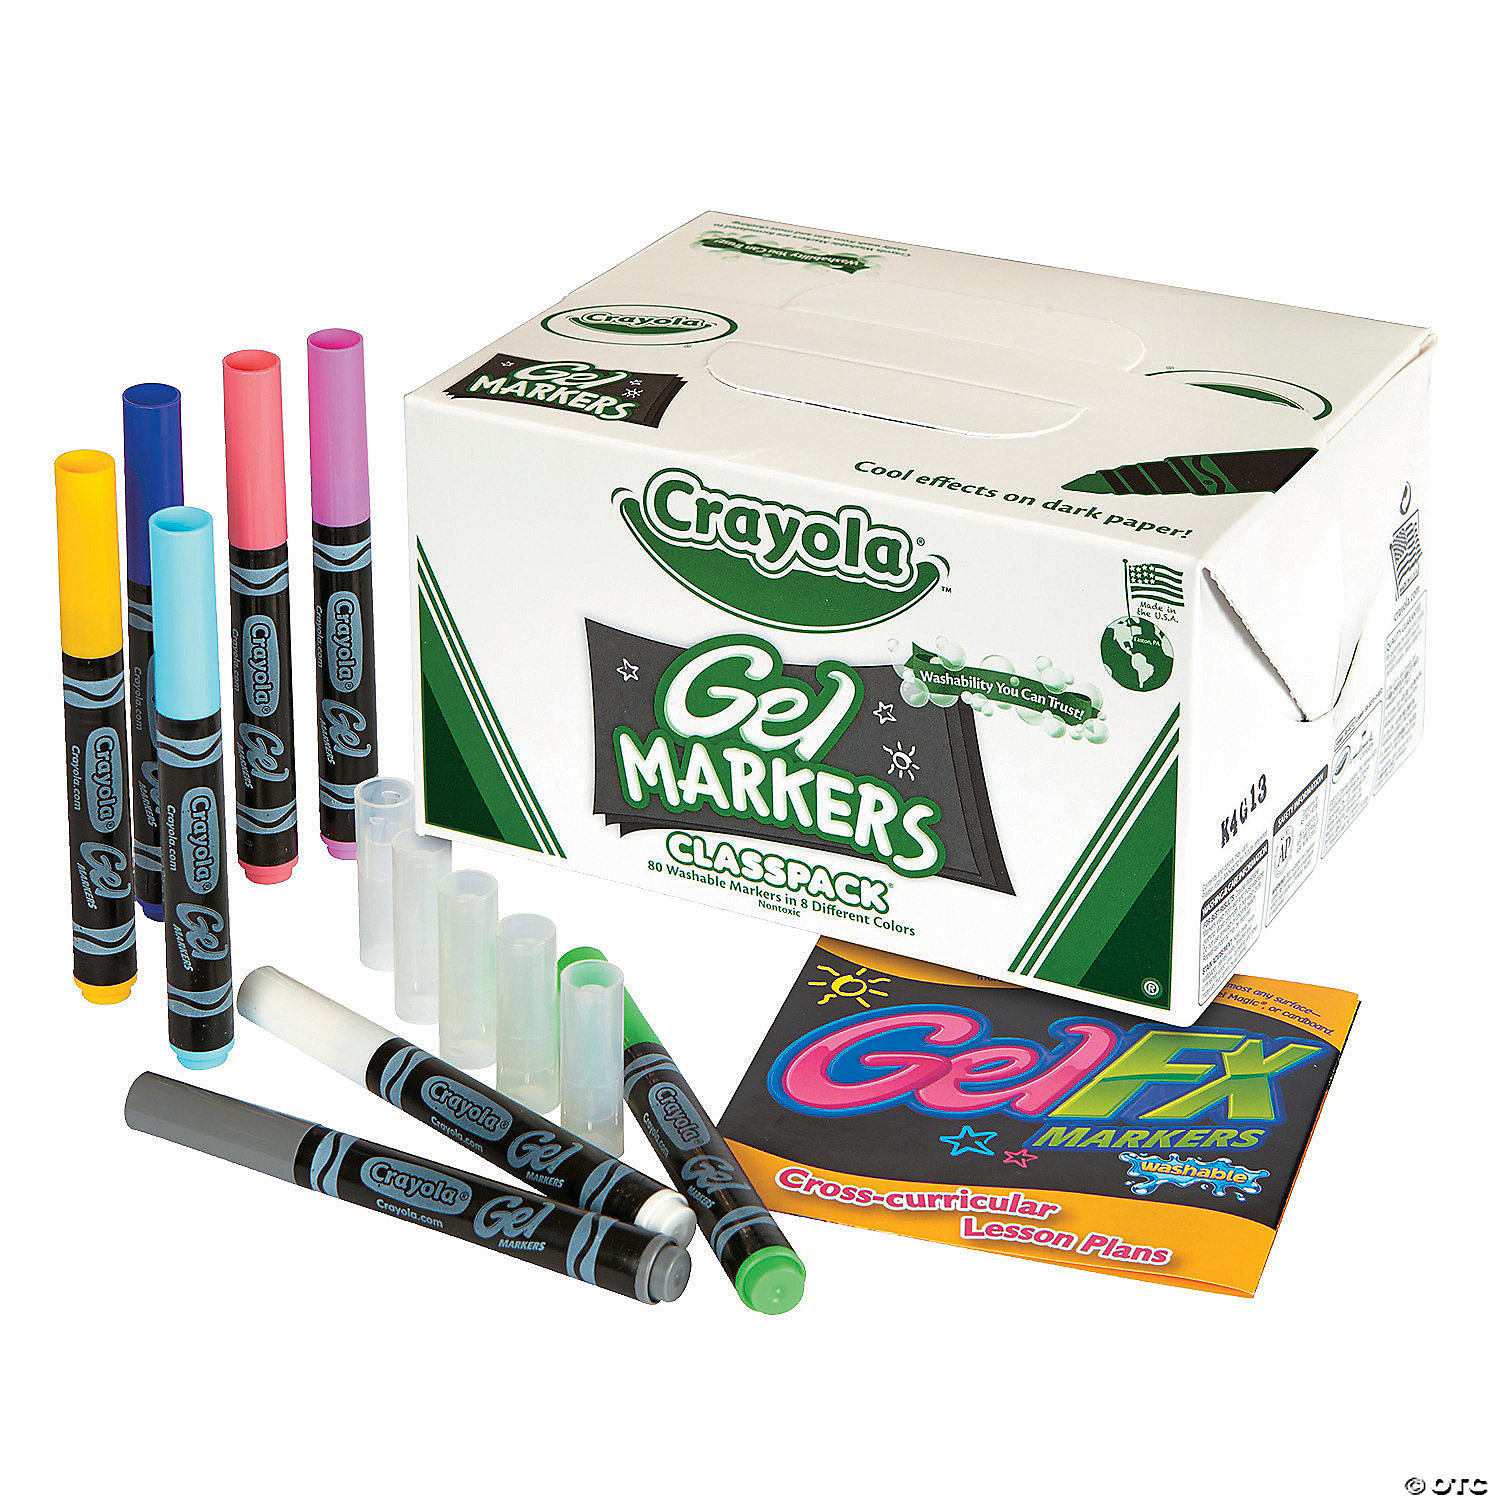 https://s7.orientaltrading.com/is/image/OrientalTrading/VIEWER_ZOOM/crayola-gel-fx-markers-classpack-80-ct~13964936